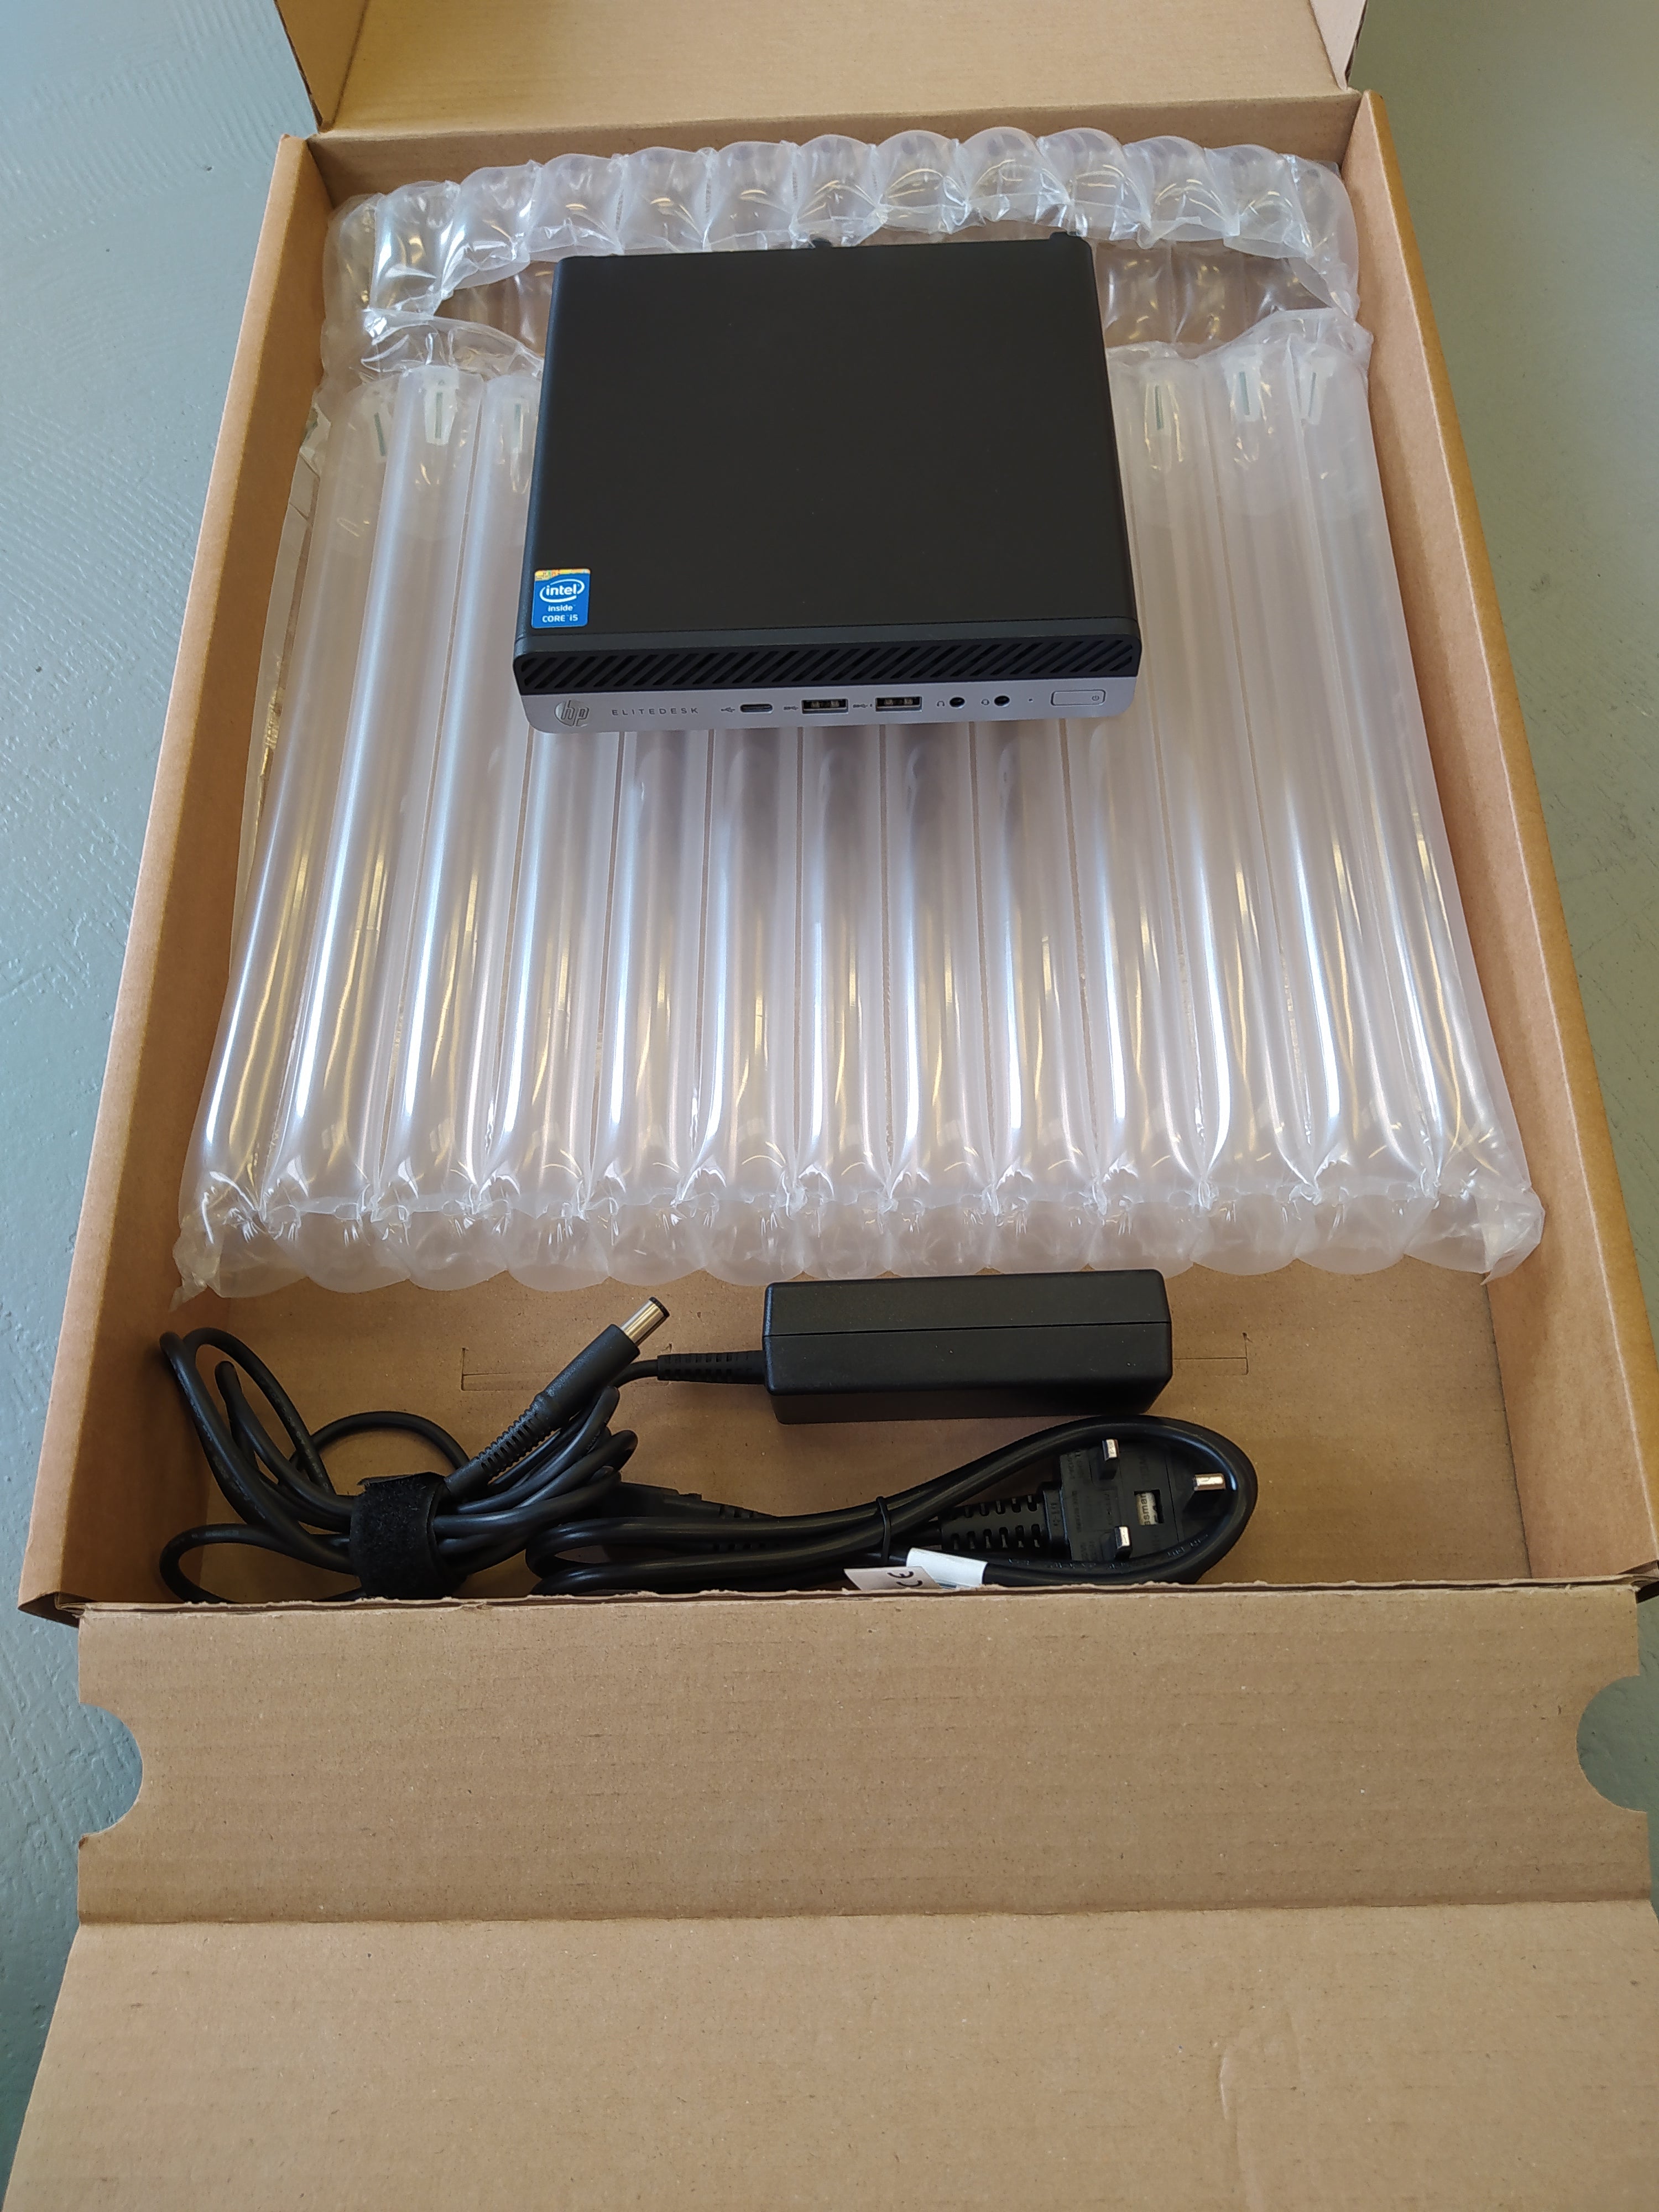 HP Elitedesk 800 G4 Mini - i5-8500T | JAMM21 – Jamm21